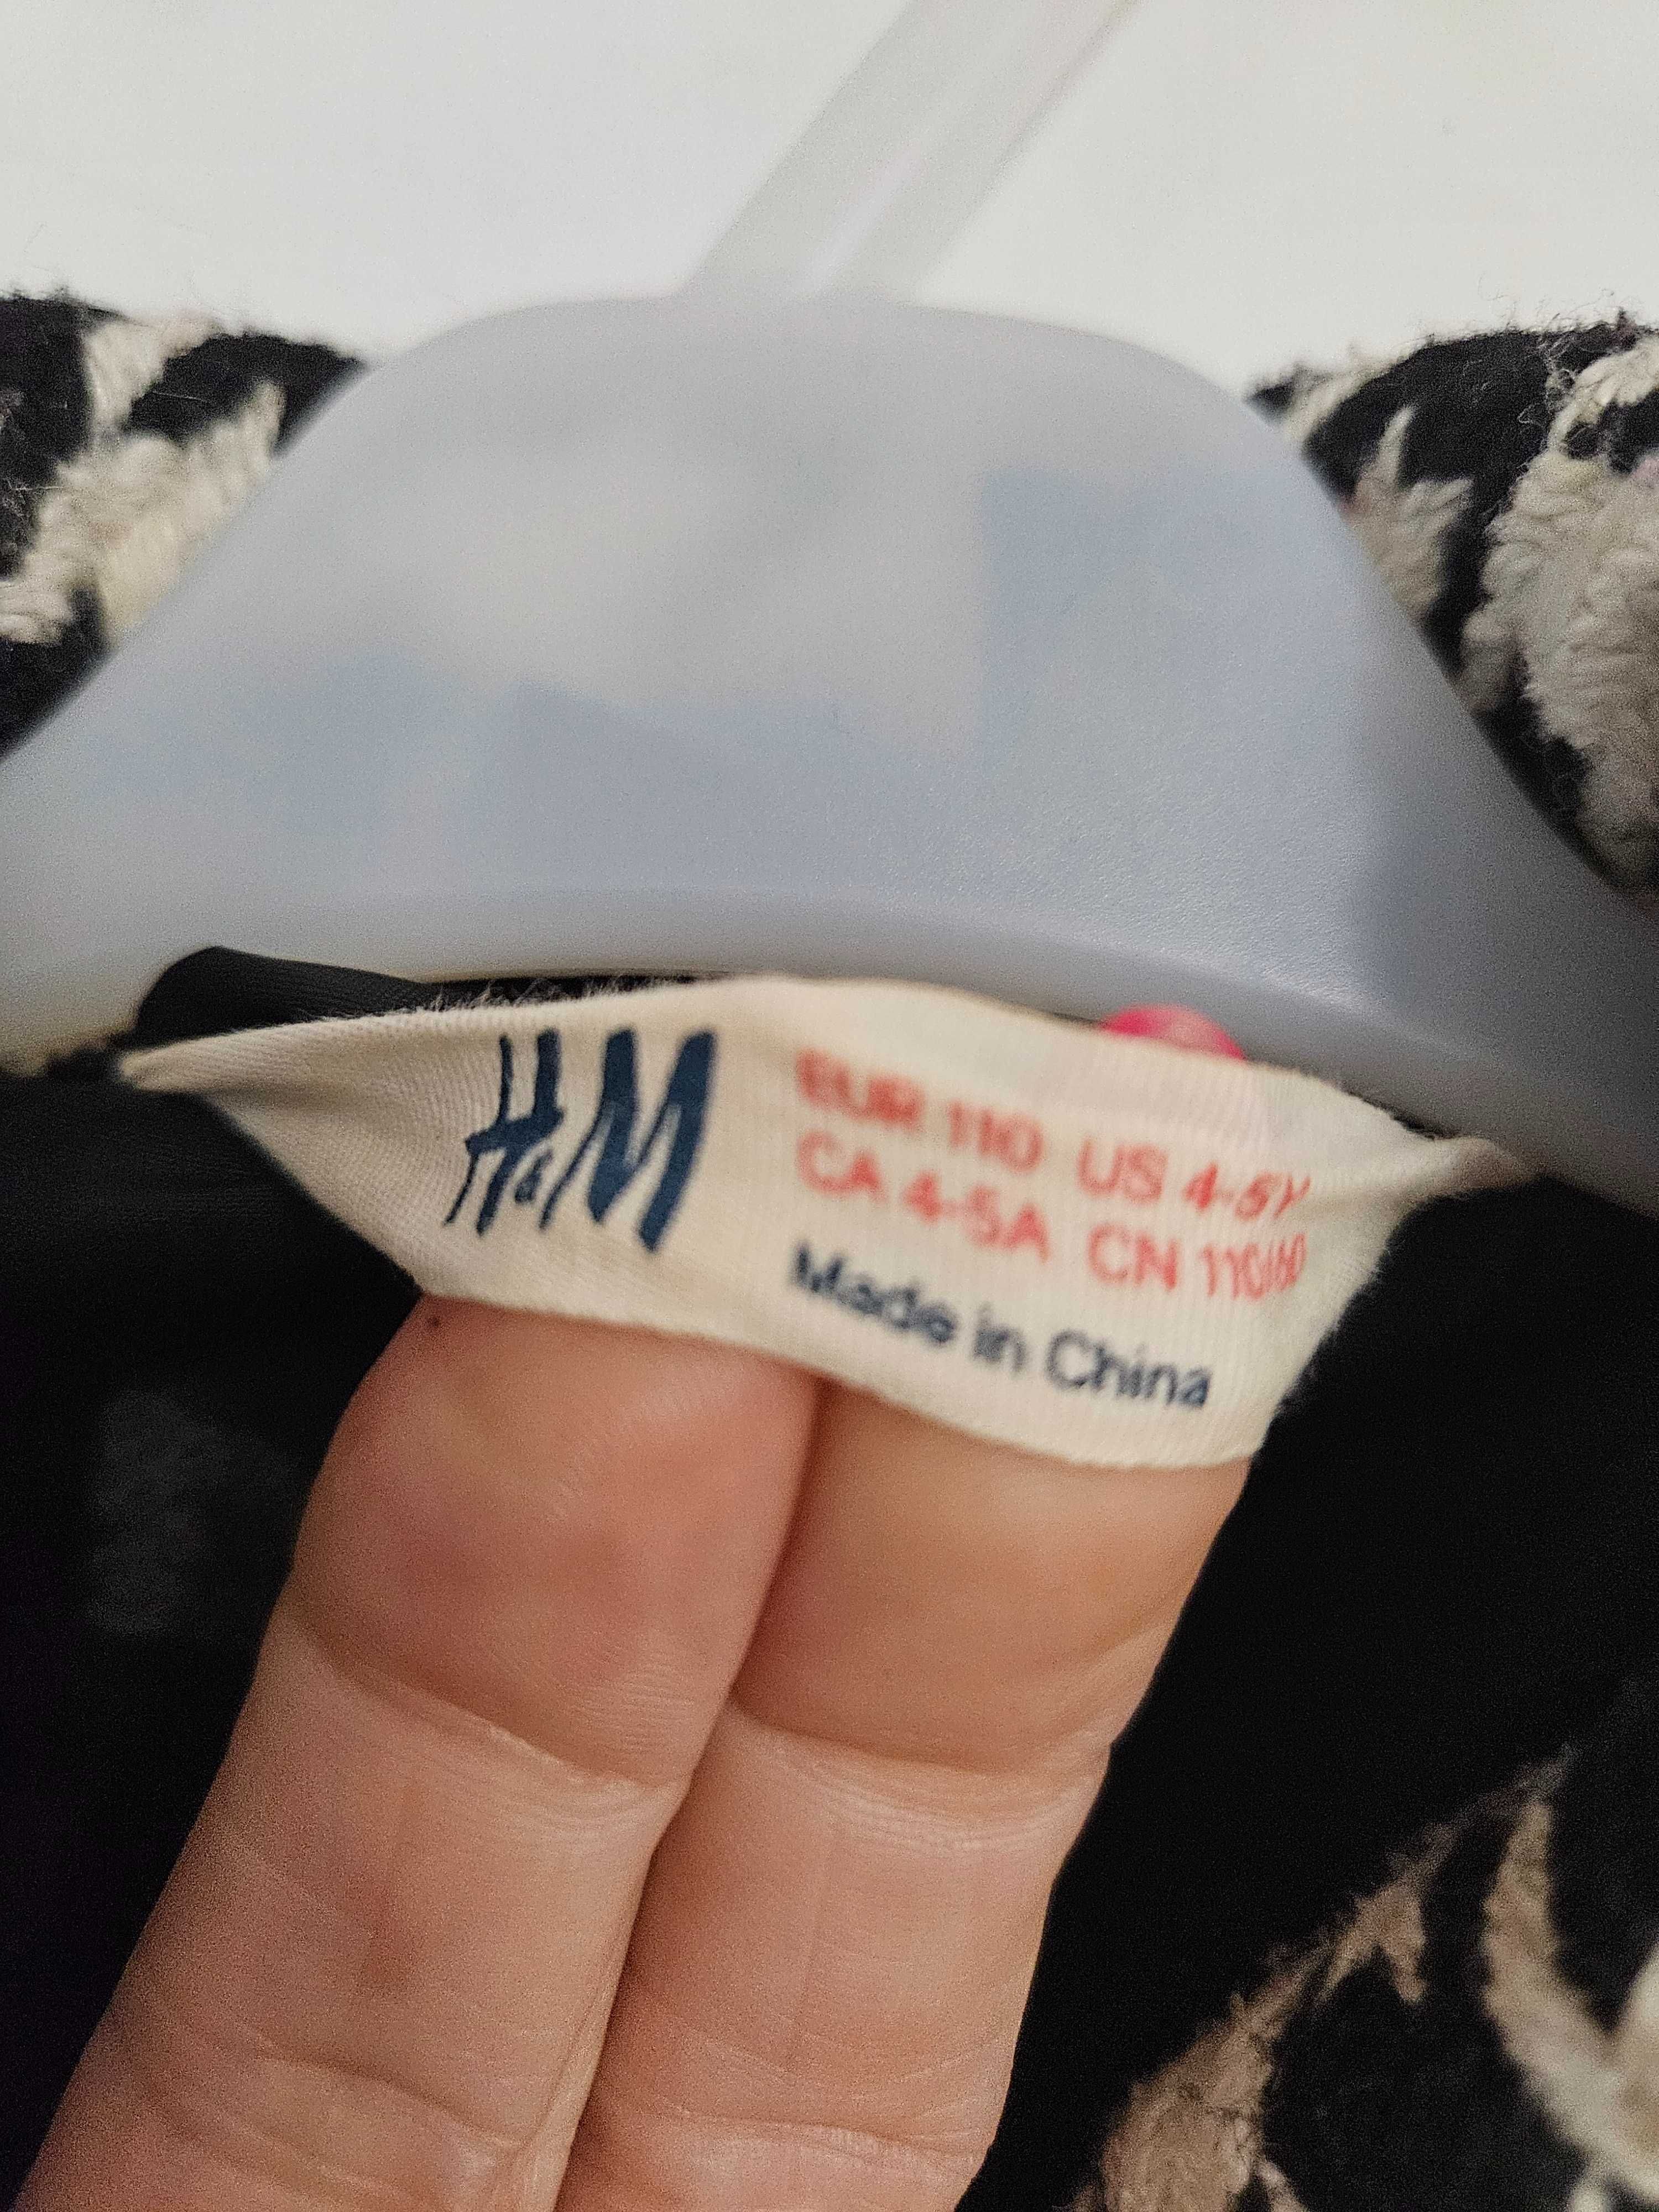 H&M plaszczyk kurtka rozmiar 104/110 w kartę